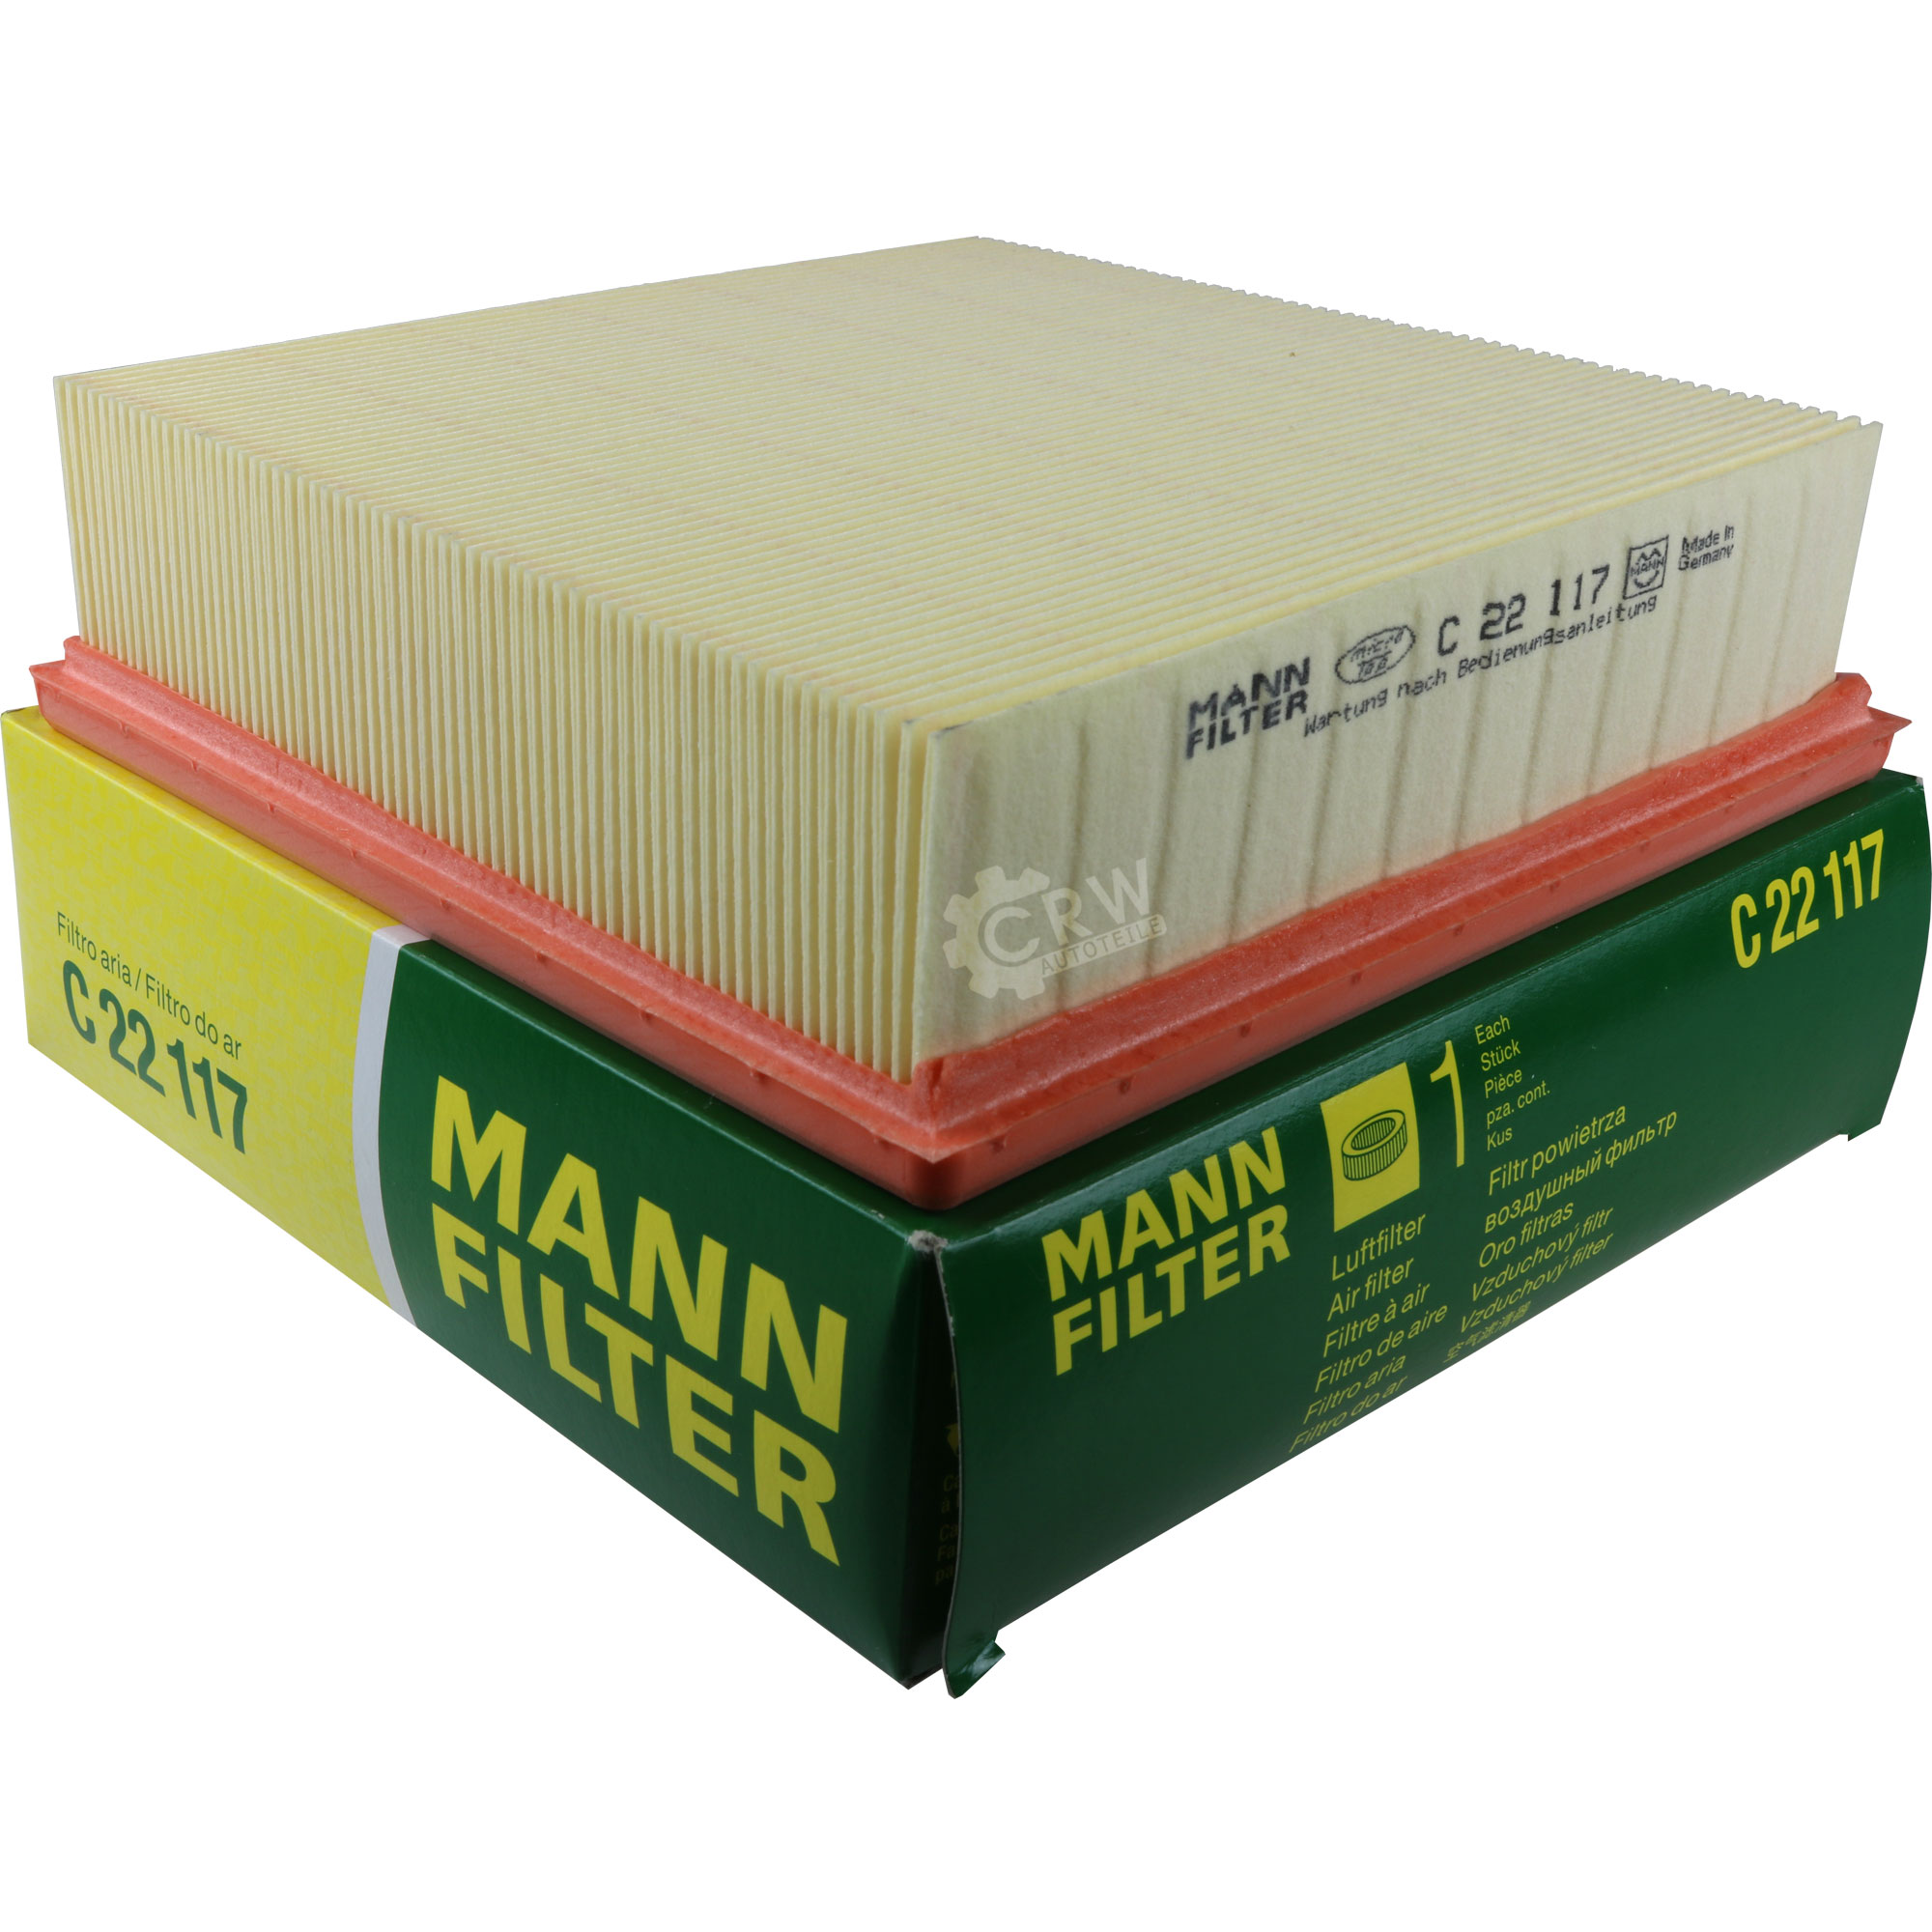 MANN-FILTER Luftfilter für Lada Niva 2121 1700 i 4x4 Kalina Kombi 2194 1.6 1117